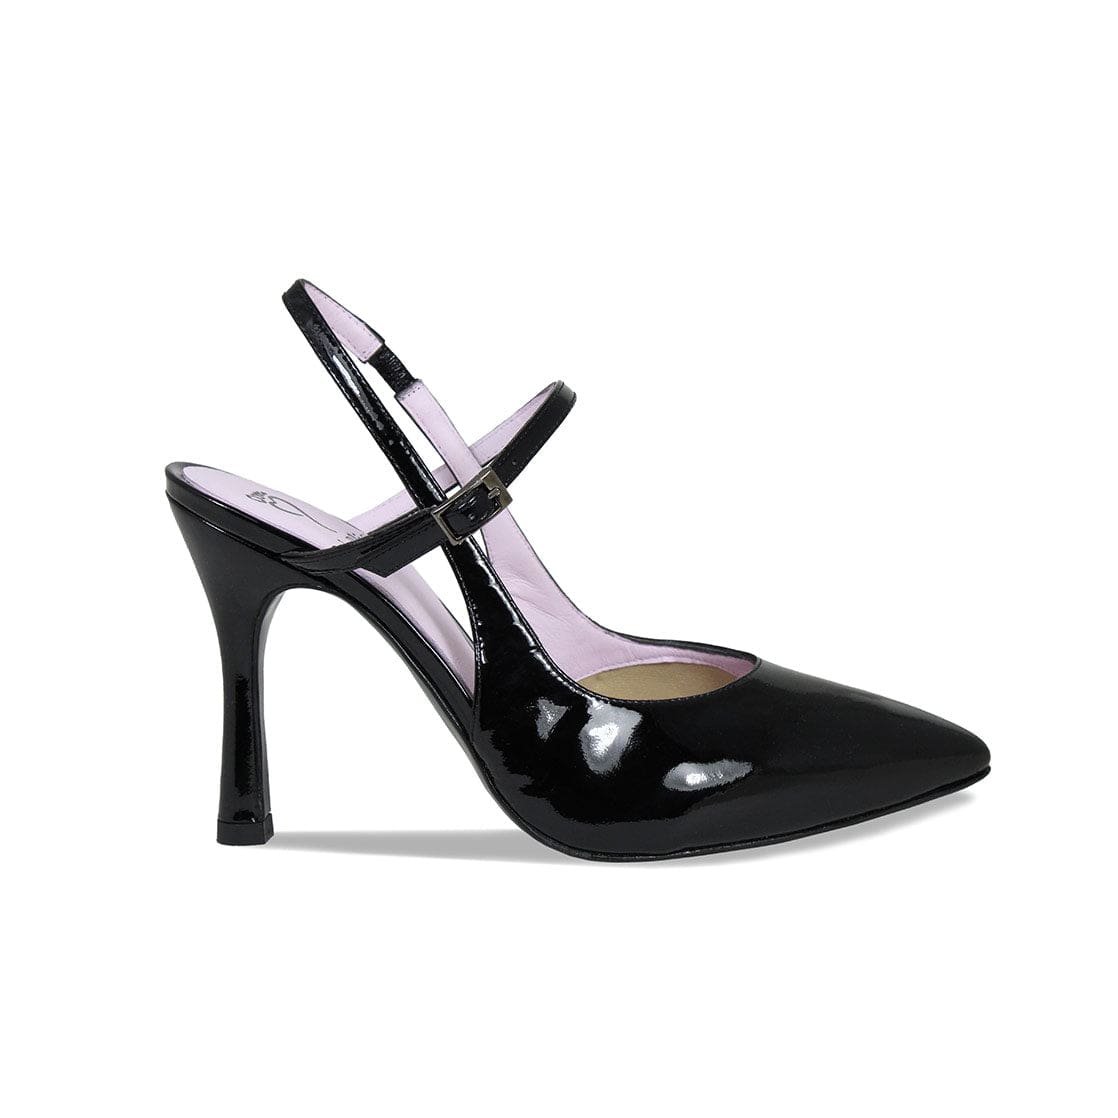 Ankle Strap Black Patent Hidden Platform | Platform high heel shoes, Heels,  High heels